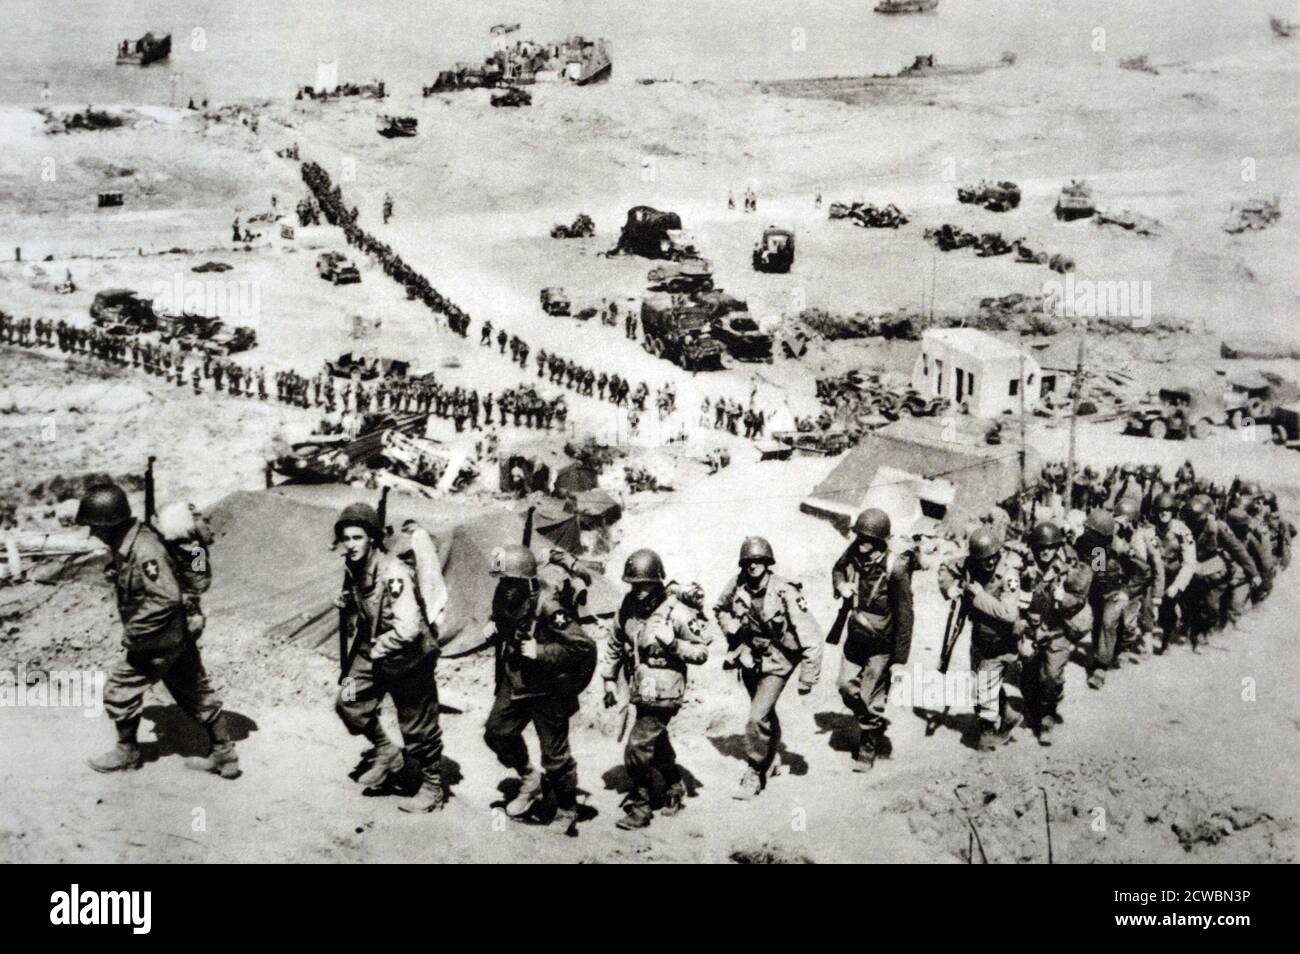 Photographie en noir et blanc de la Seconde Guerre mondiale (1939-1945) montrant les troupes américaines débarquant en Normandie le 6 juin 1944 ; vue depuis le sommet d'une colline surplombant la mer et les troupes américaines marchant sur la colline. Banque D'Images